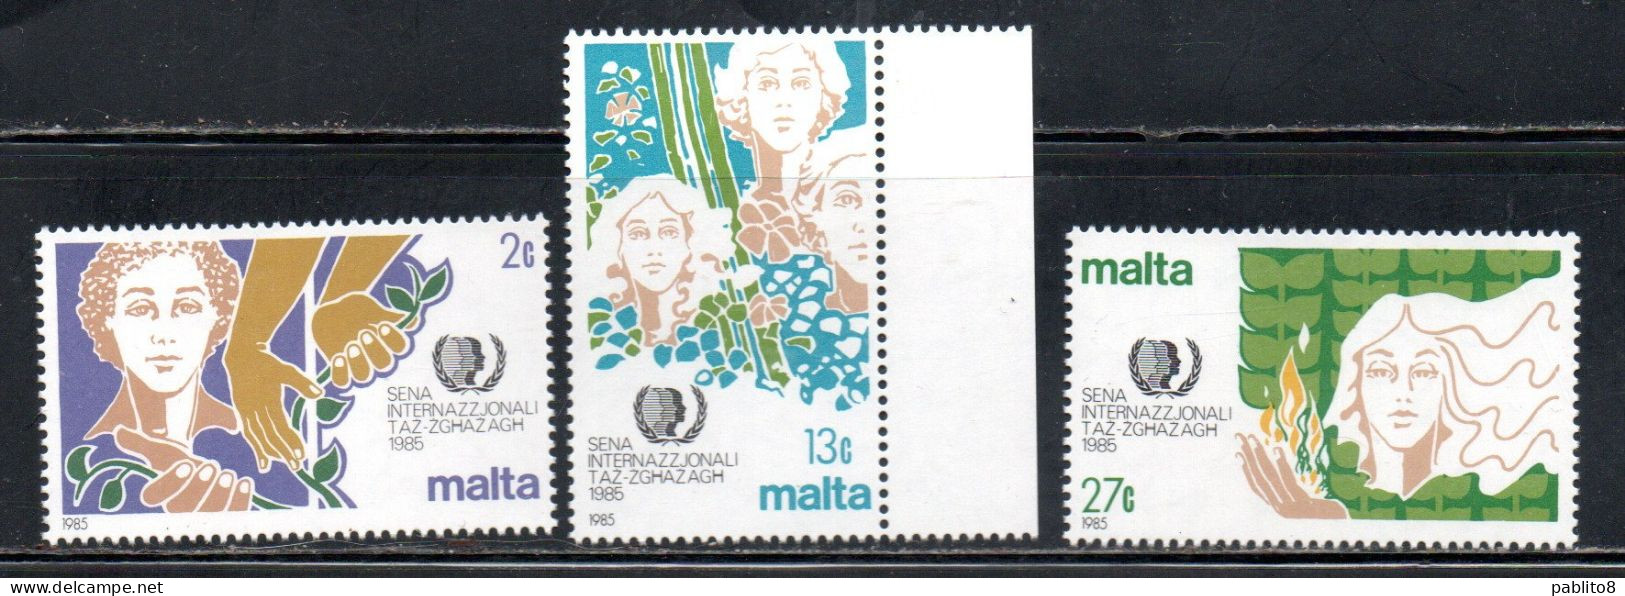 MALTA 1985 INTERNATIONAL YOUTH YEAR ANNO INTERNAZIONALE DELLA GIOVENTÙ COMPLETE SET SERIE COMPLETA MNH - Malte